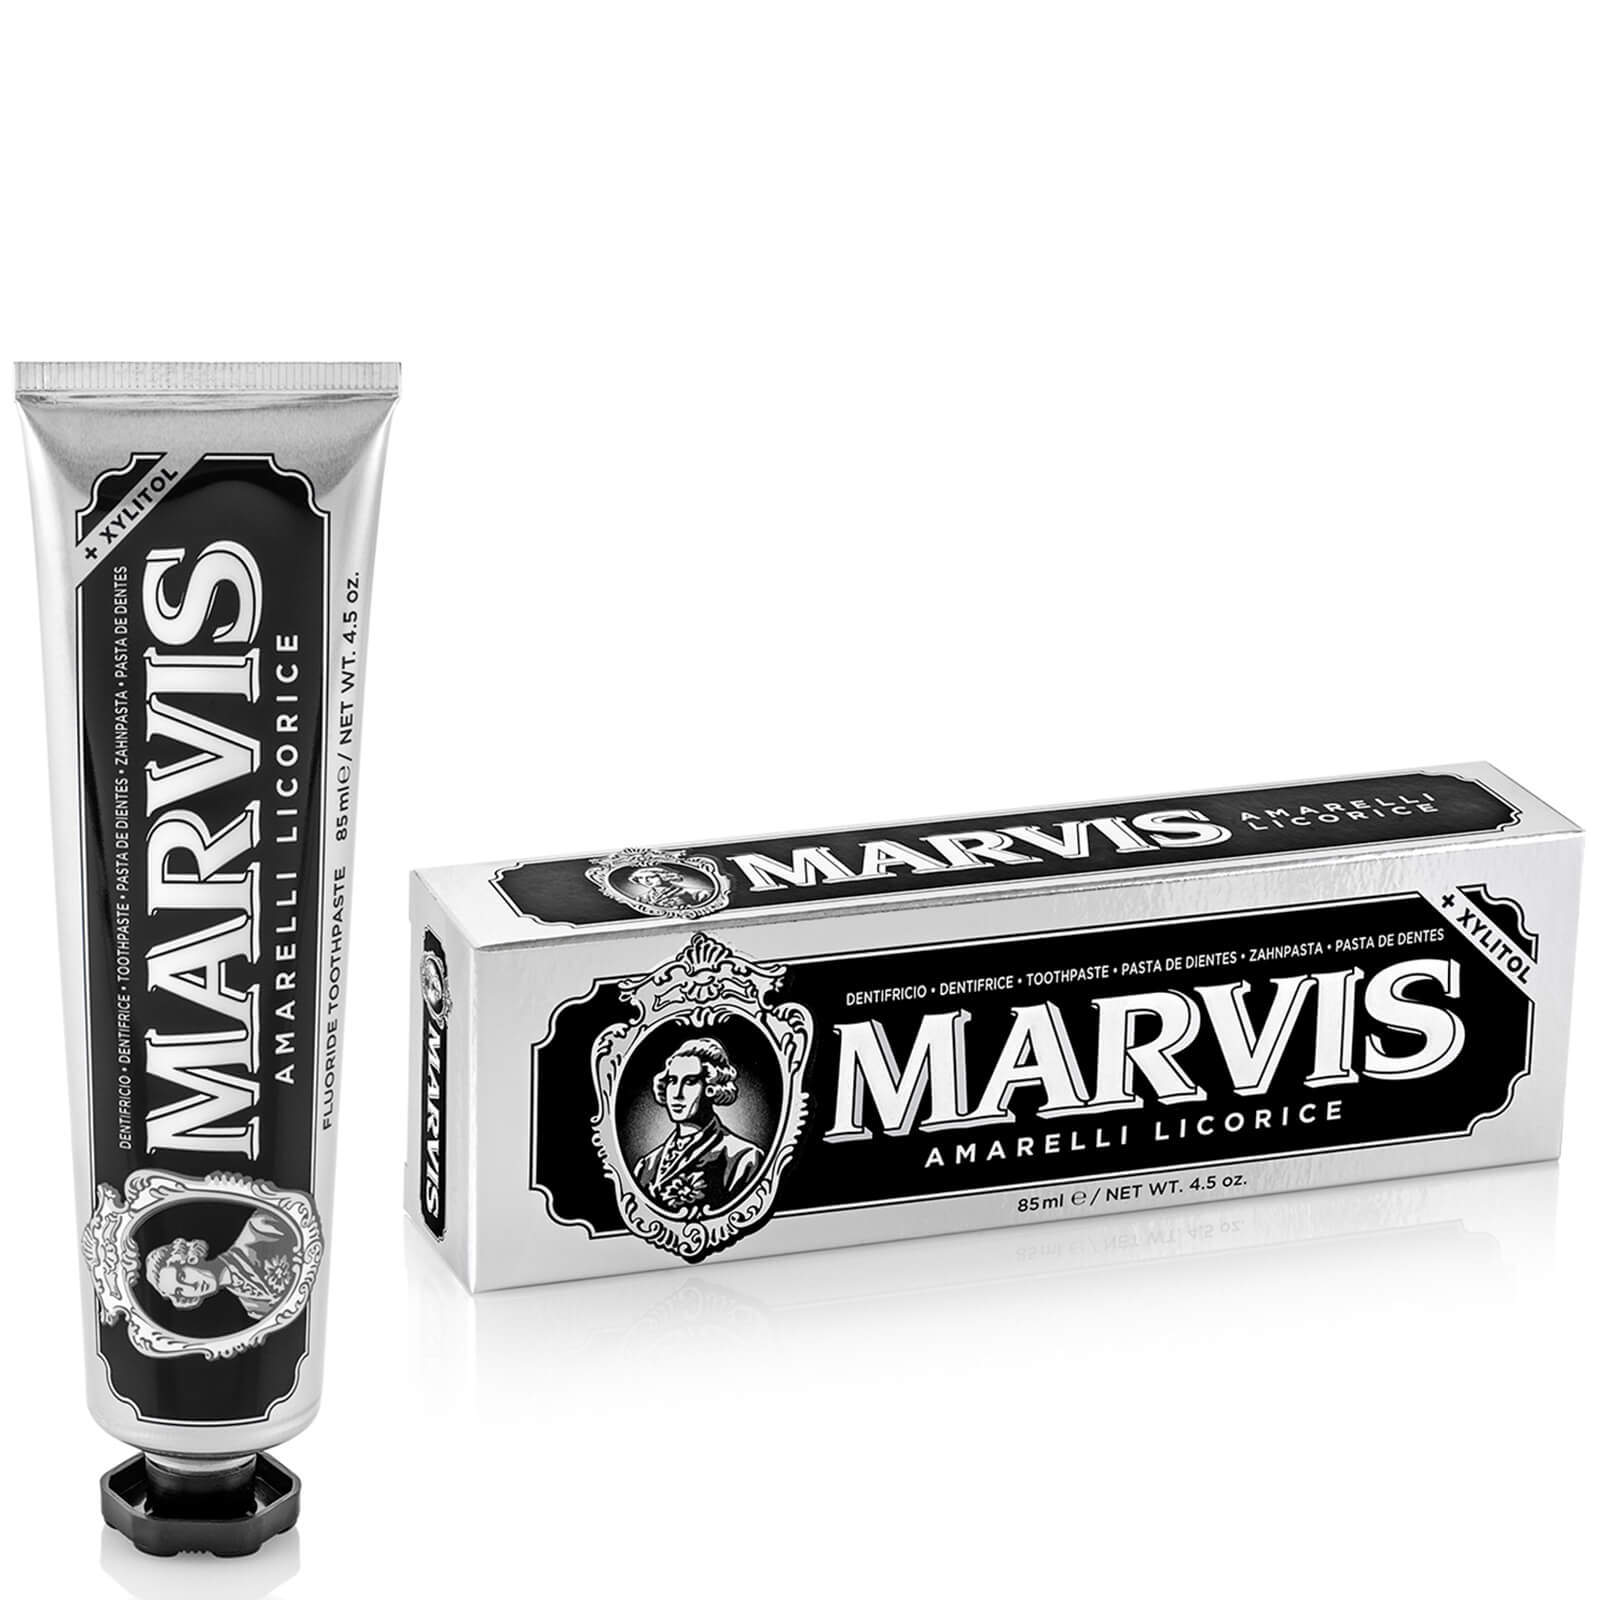 Marvis Liquorice Mint Toothpaste 85ml lookfantastic.com imagine